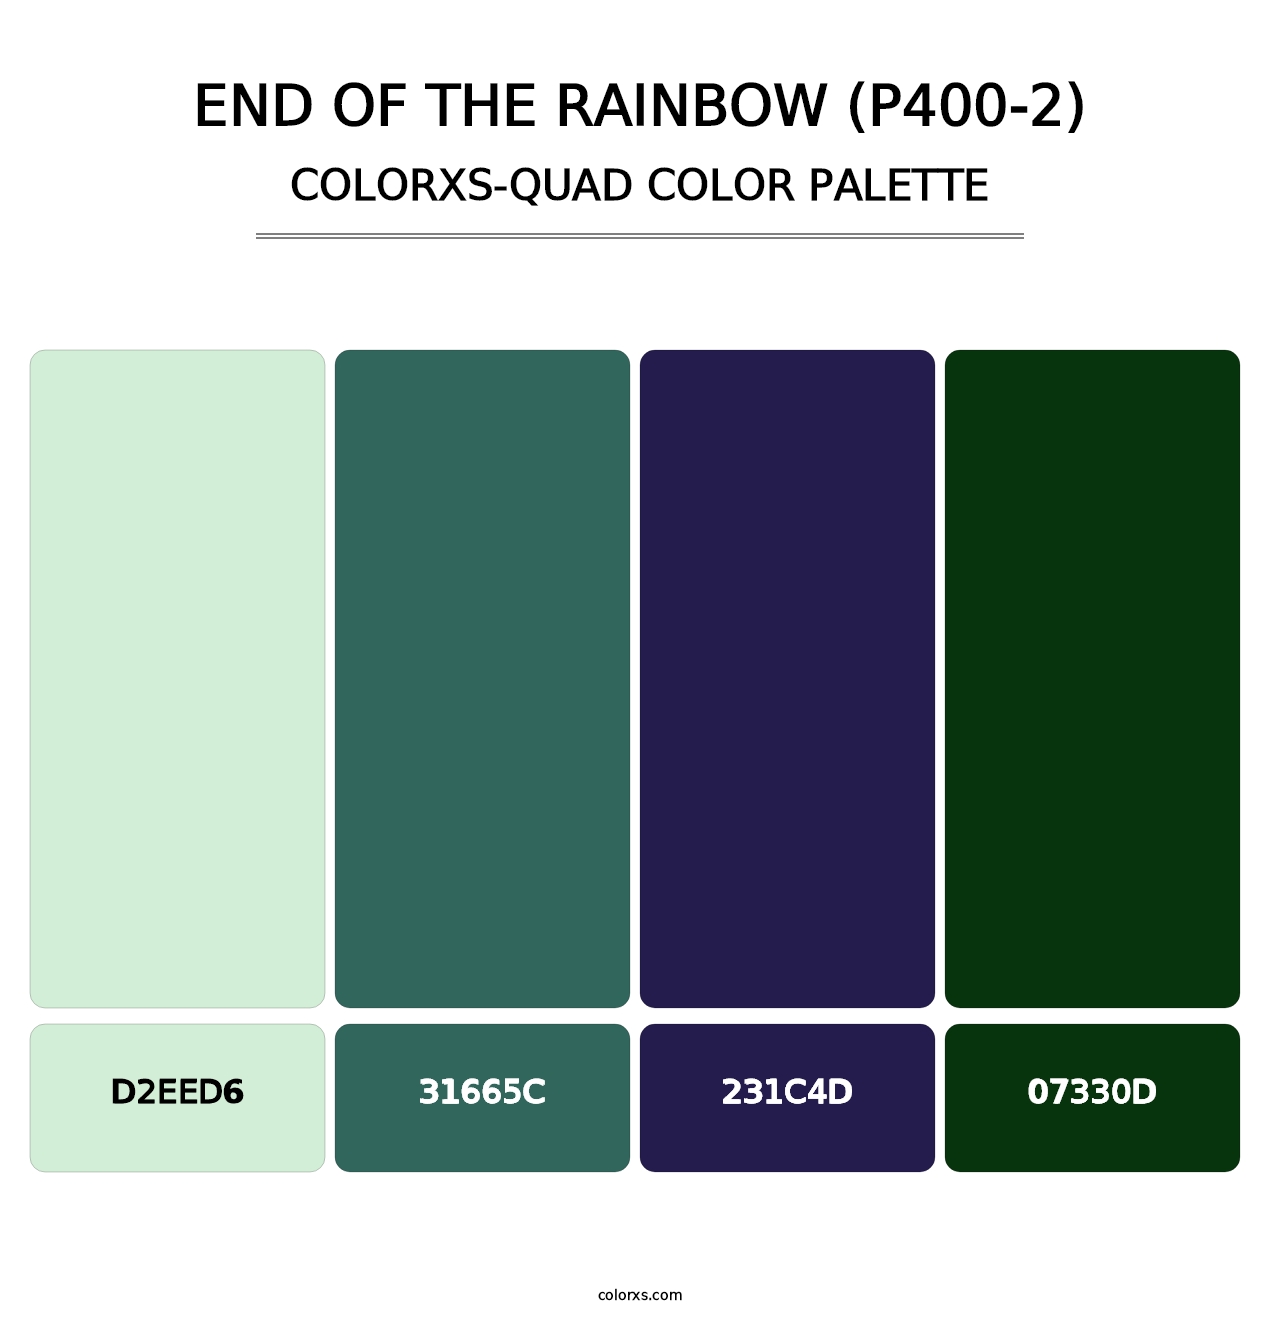 End Of The Rainbow (P400-2) - Colorxs Quad Palette